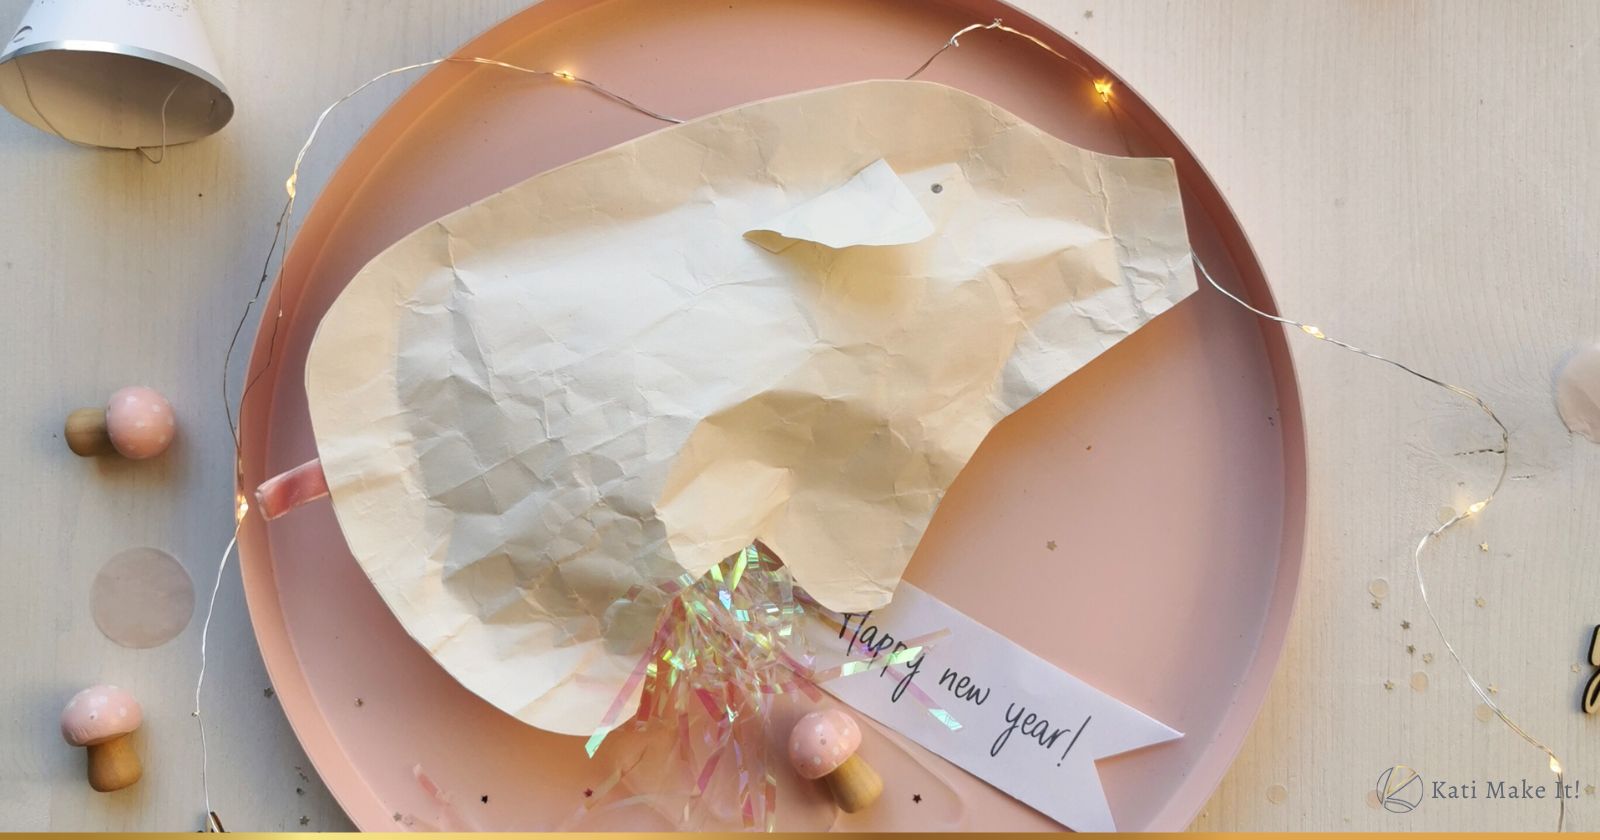 Glücksschwein "Papier-Oink" als Glücksbringer basteln. Ein originelles und persönliches Last Minute Silvester Geschenk zum Schnell-selber-machen. + Druckvorlage